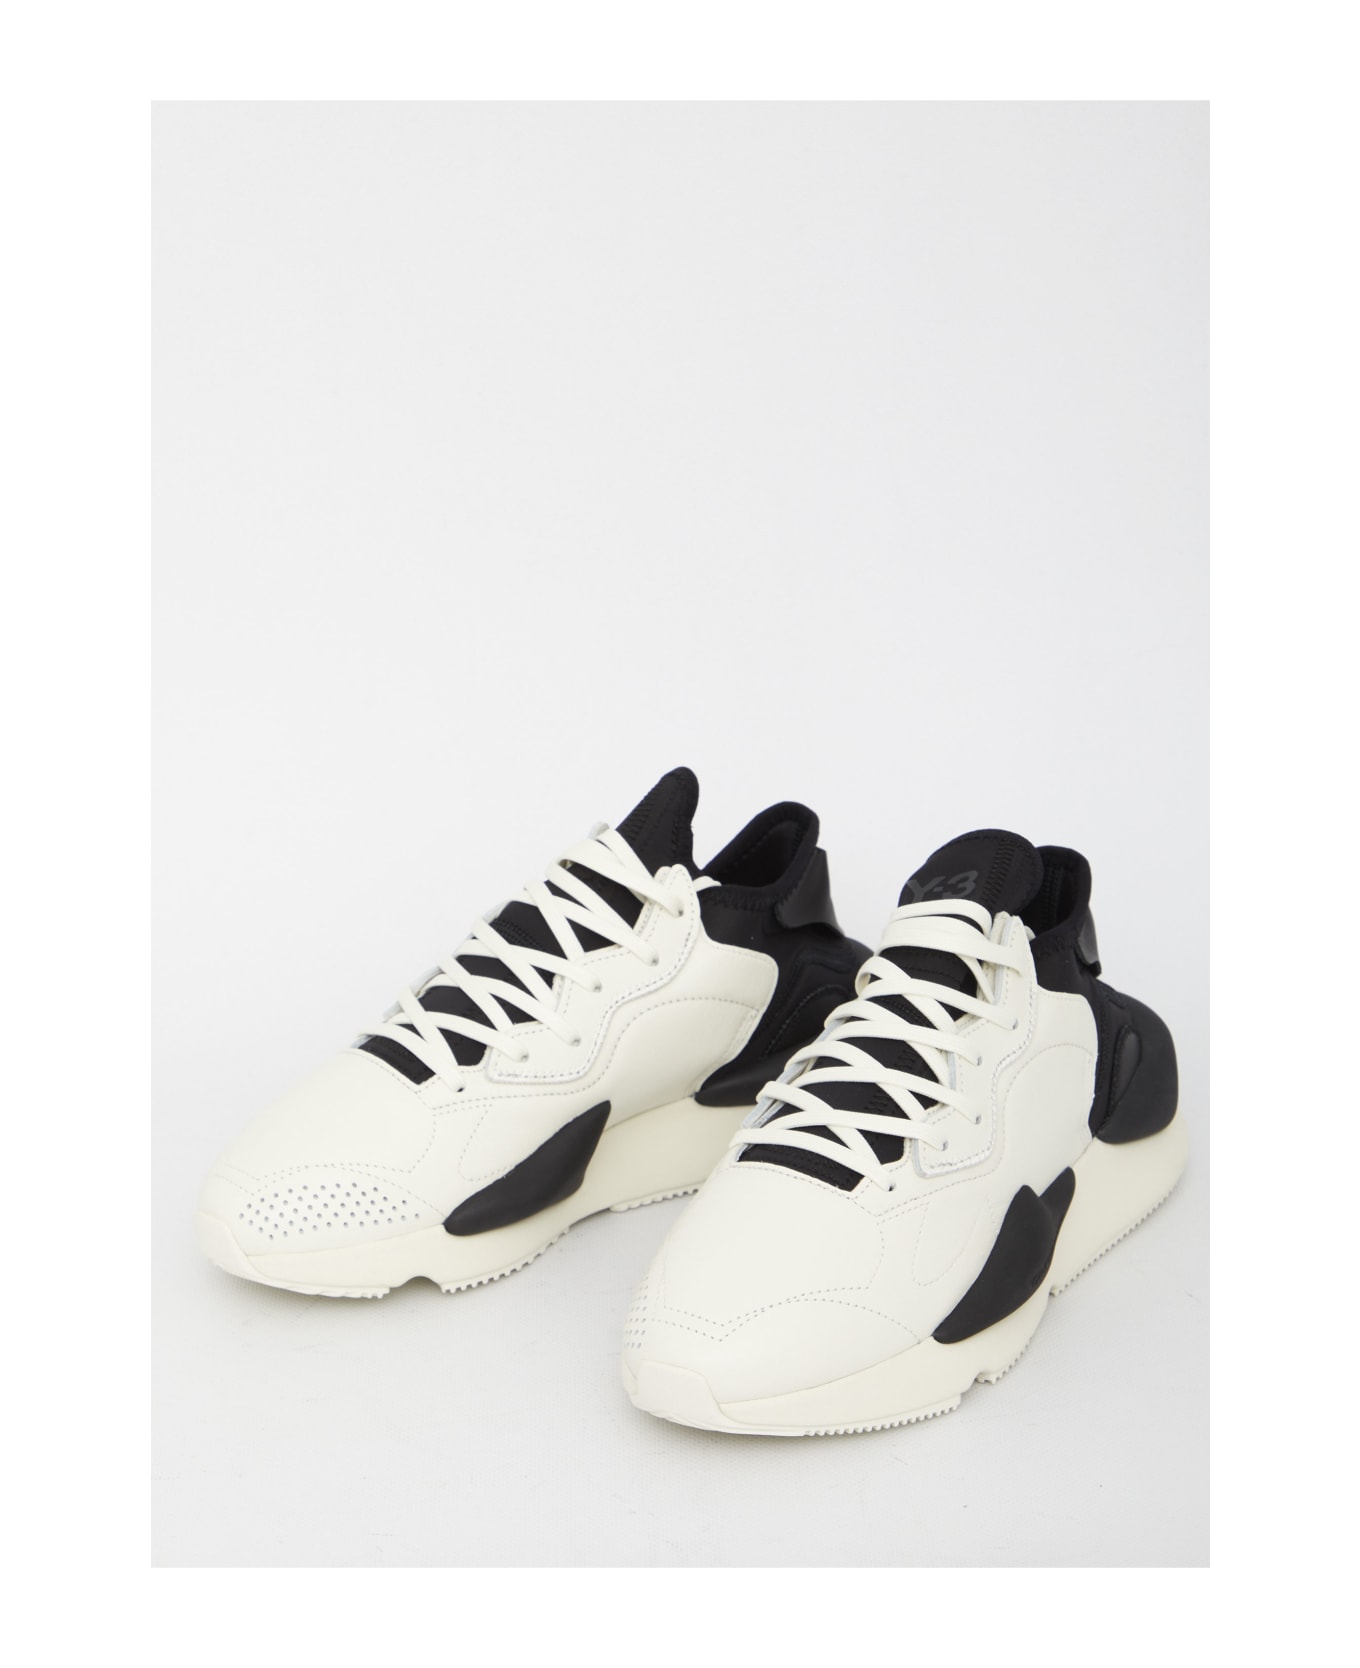 Y-3 Kaiwa Sneakers - White Black